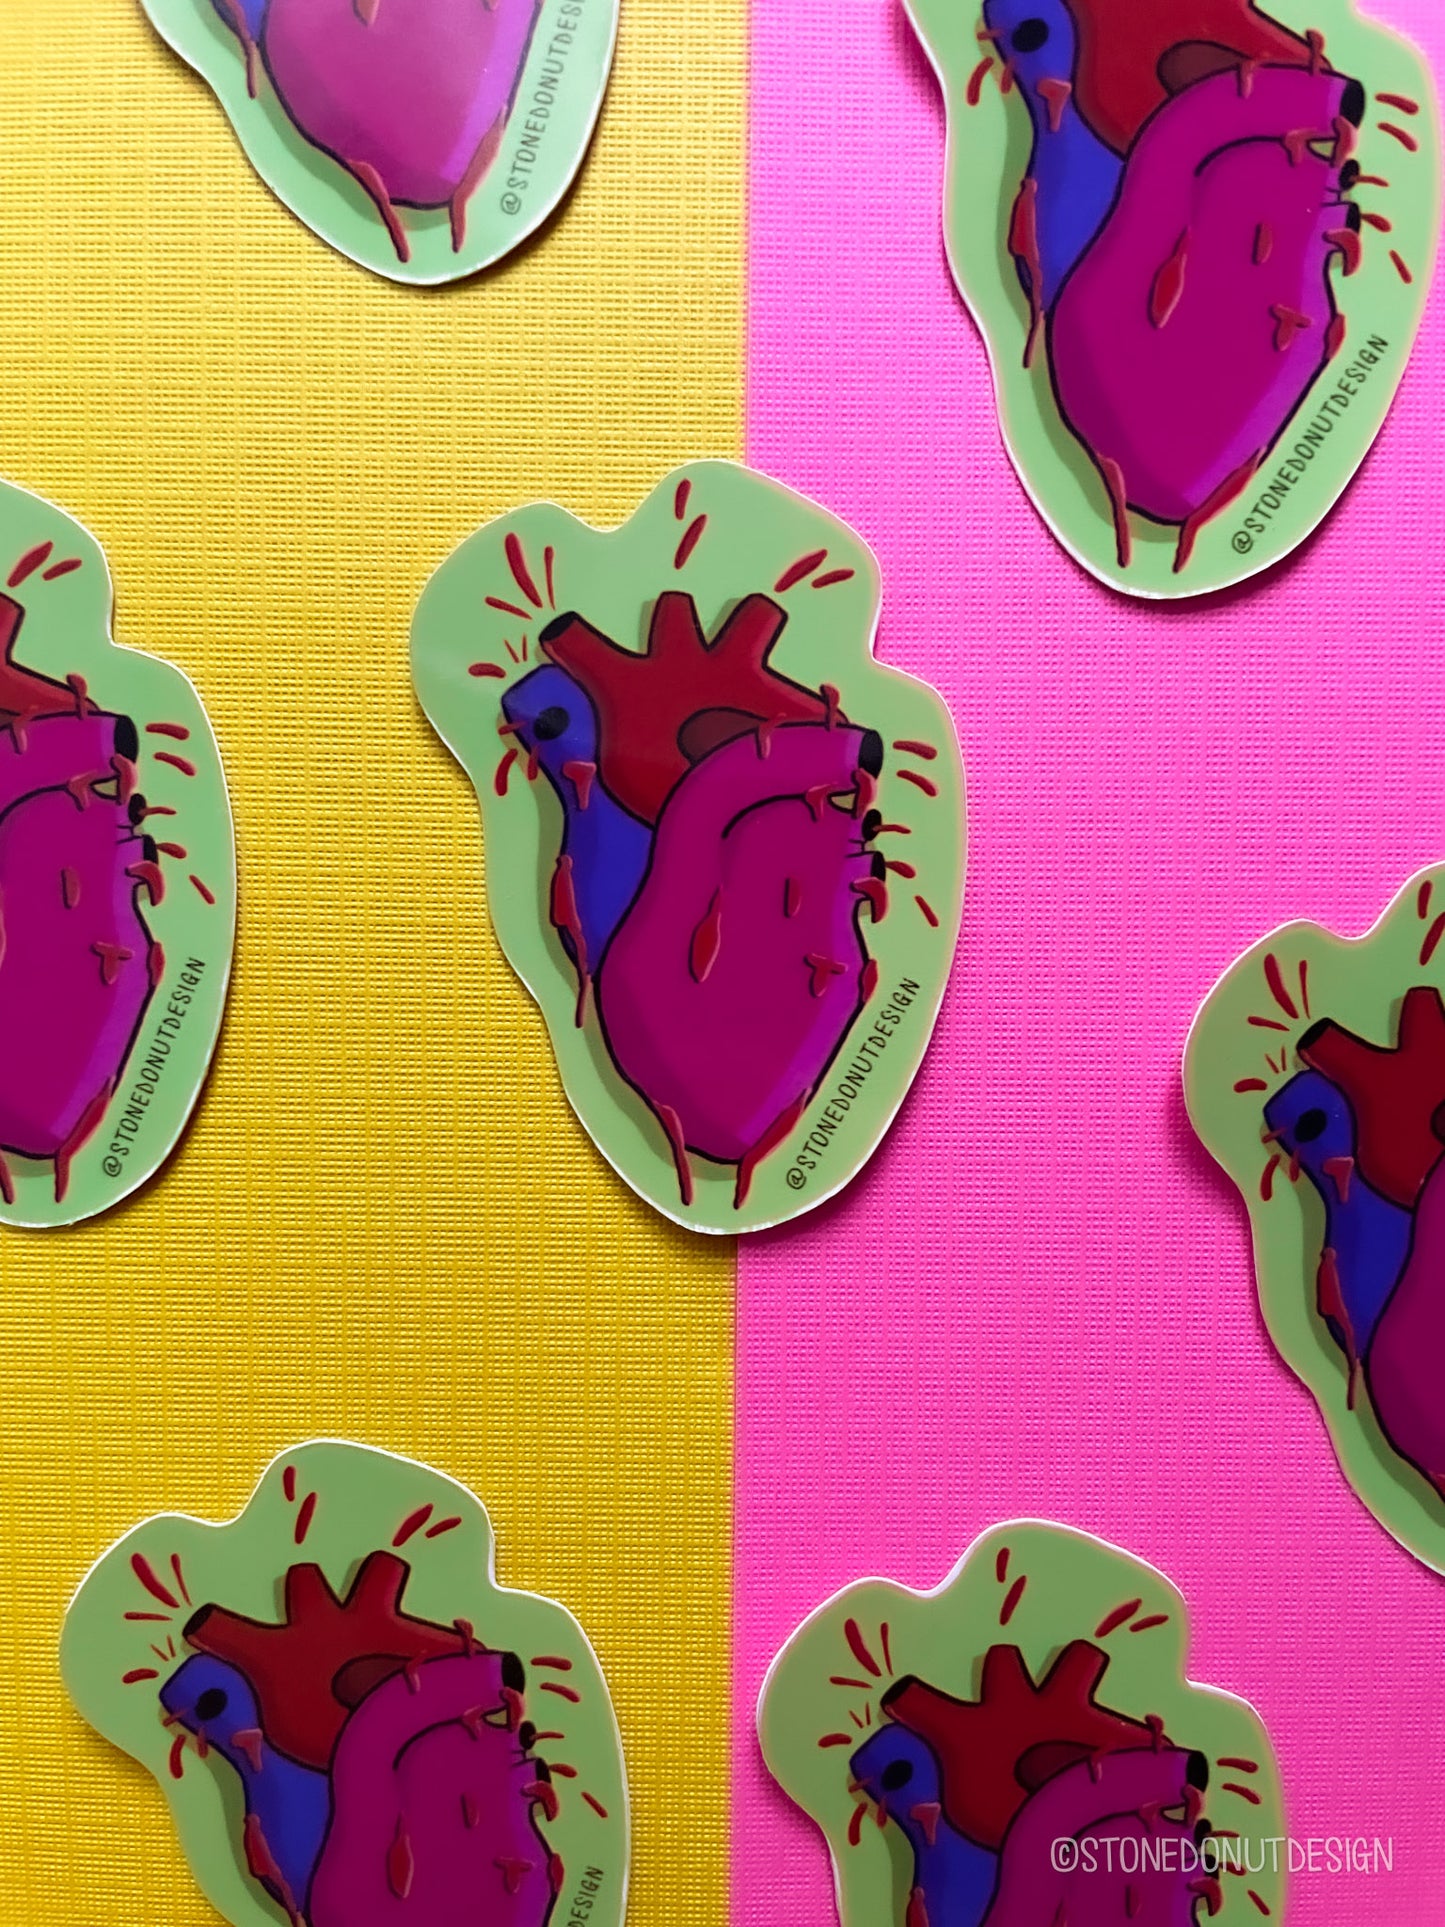 Anatomical Heart Vinyl Sticker